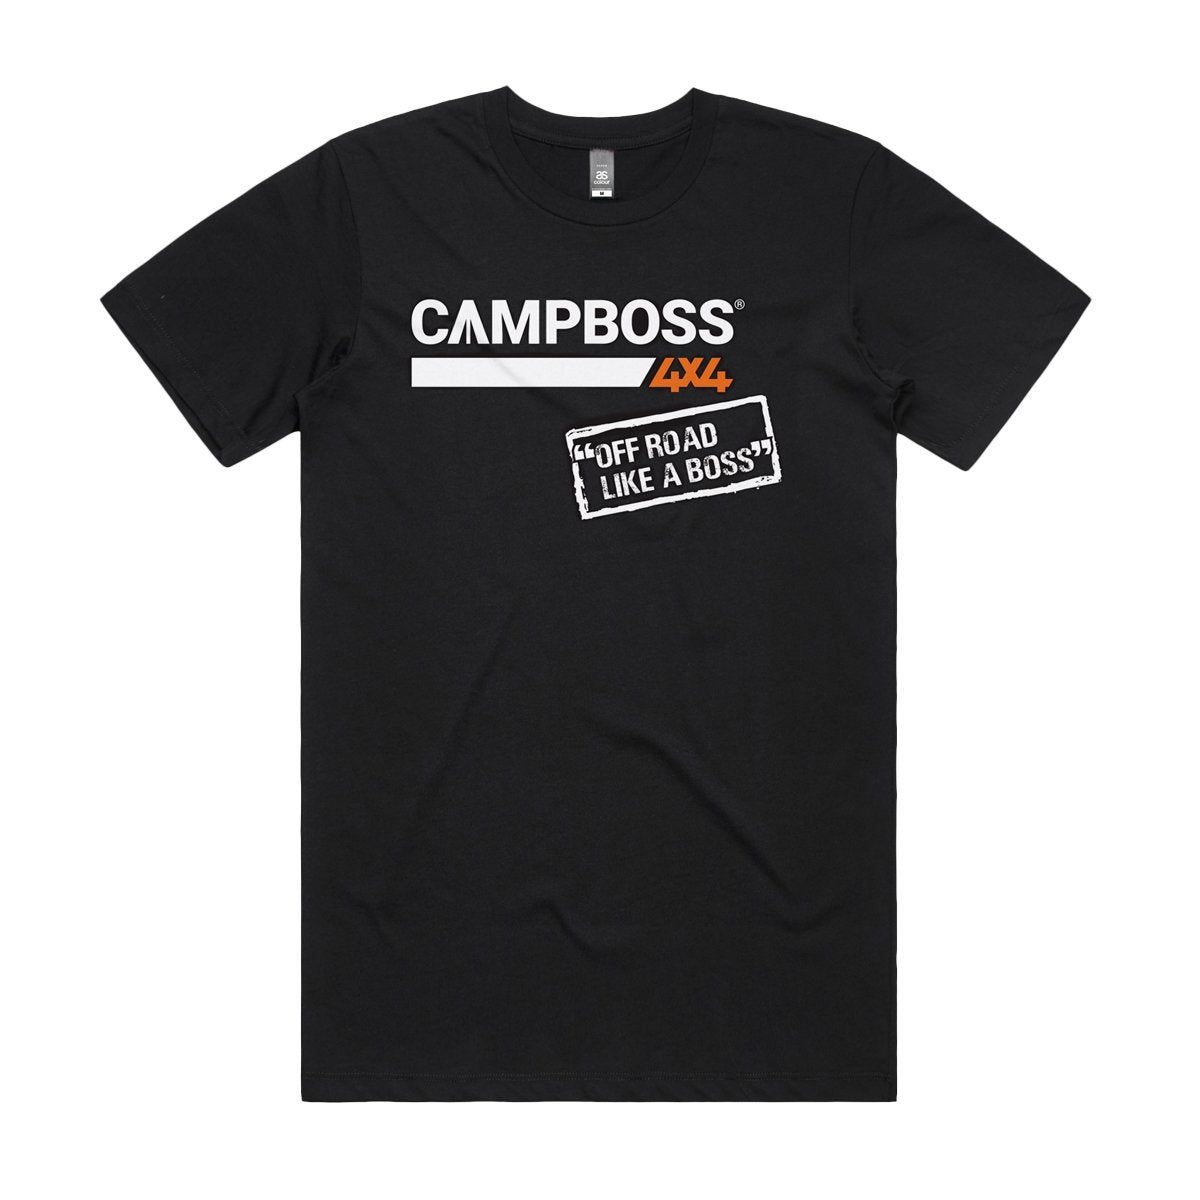 CAMPBOSS T-SHIRTS